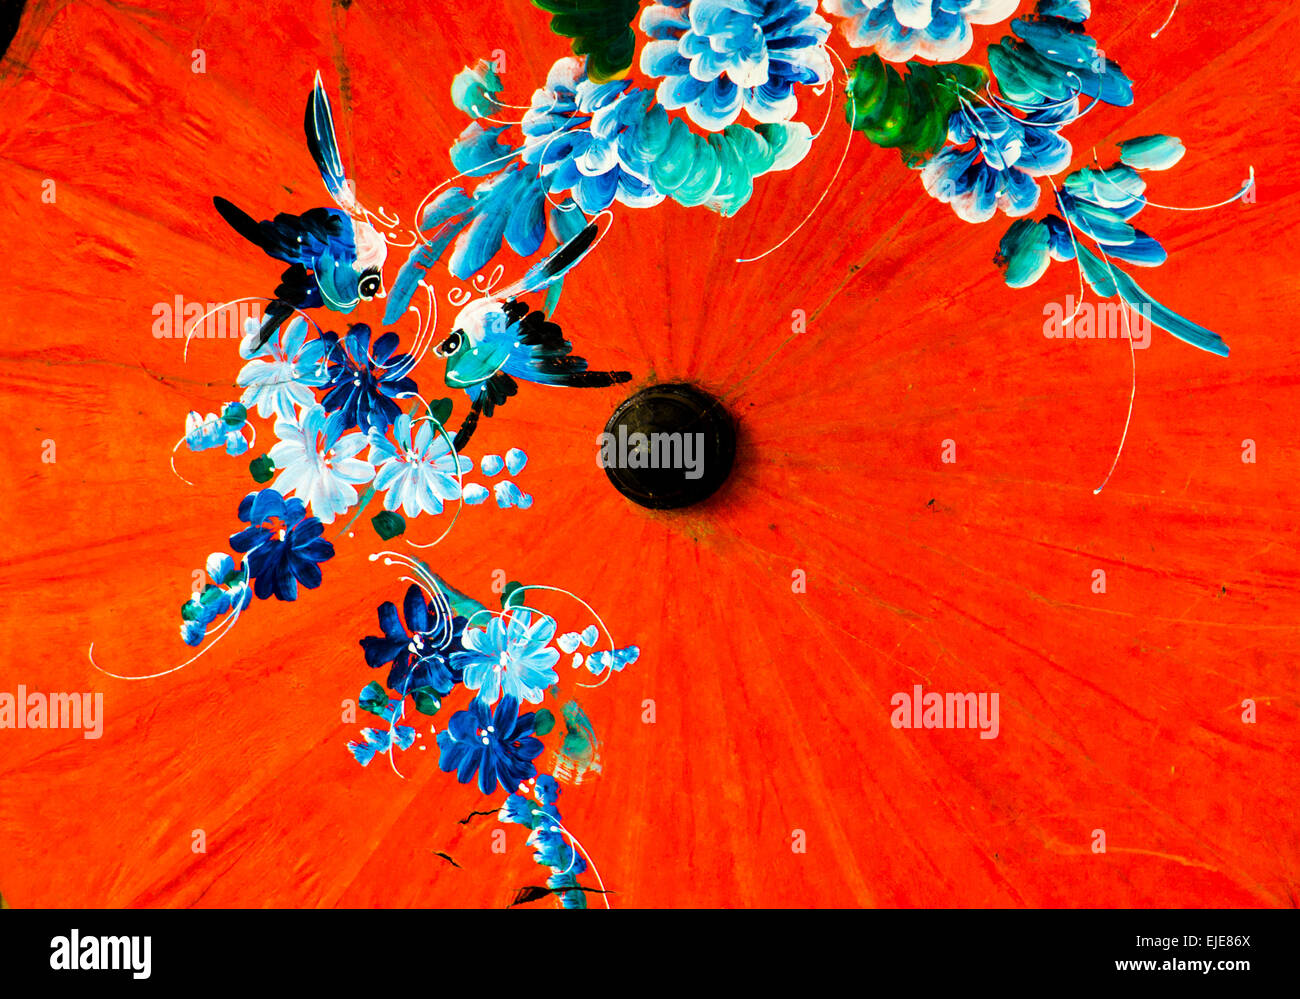 a mano e imágenes de alta resolución - Alamy